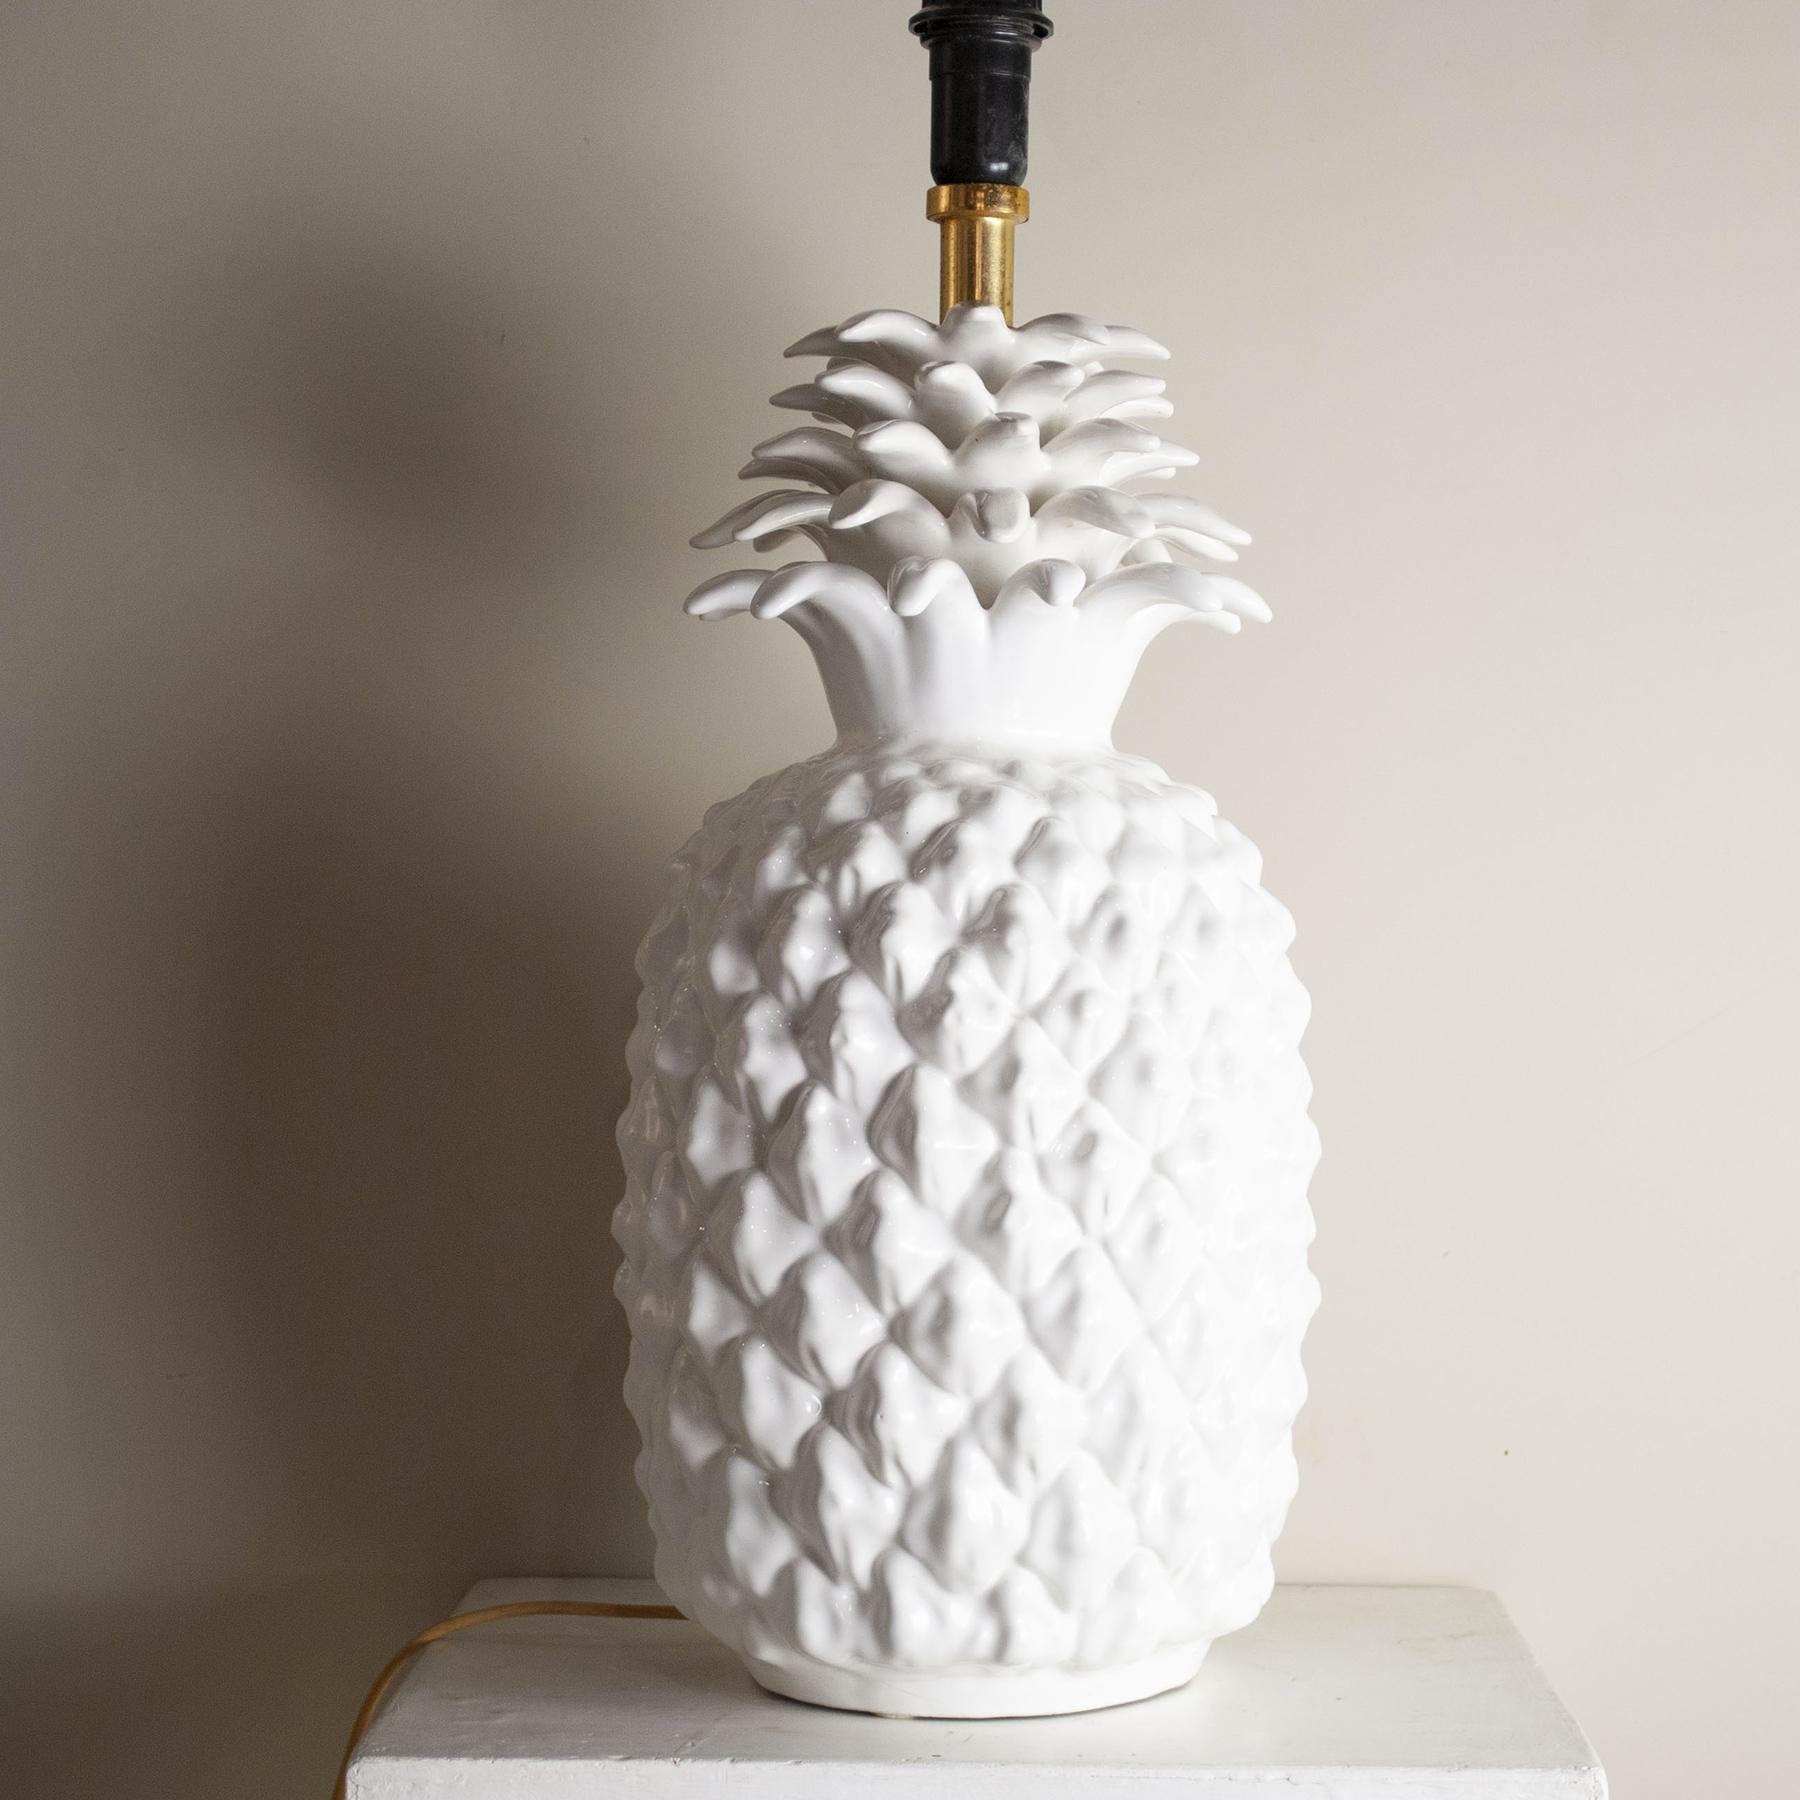 Lampe de table italienne des années 1960 en céramique émaillée et laiton, représentant un fruit exotique, l'ananas.
La lampe est vendue sans l'abat-jour sur la photo, mais il peut être demandé dans les formes, tailles et couleurs souhaitées avec un